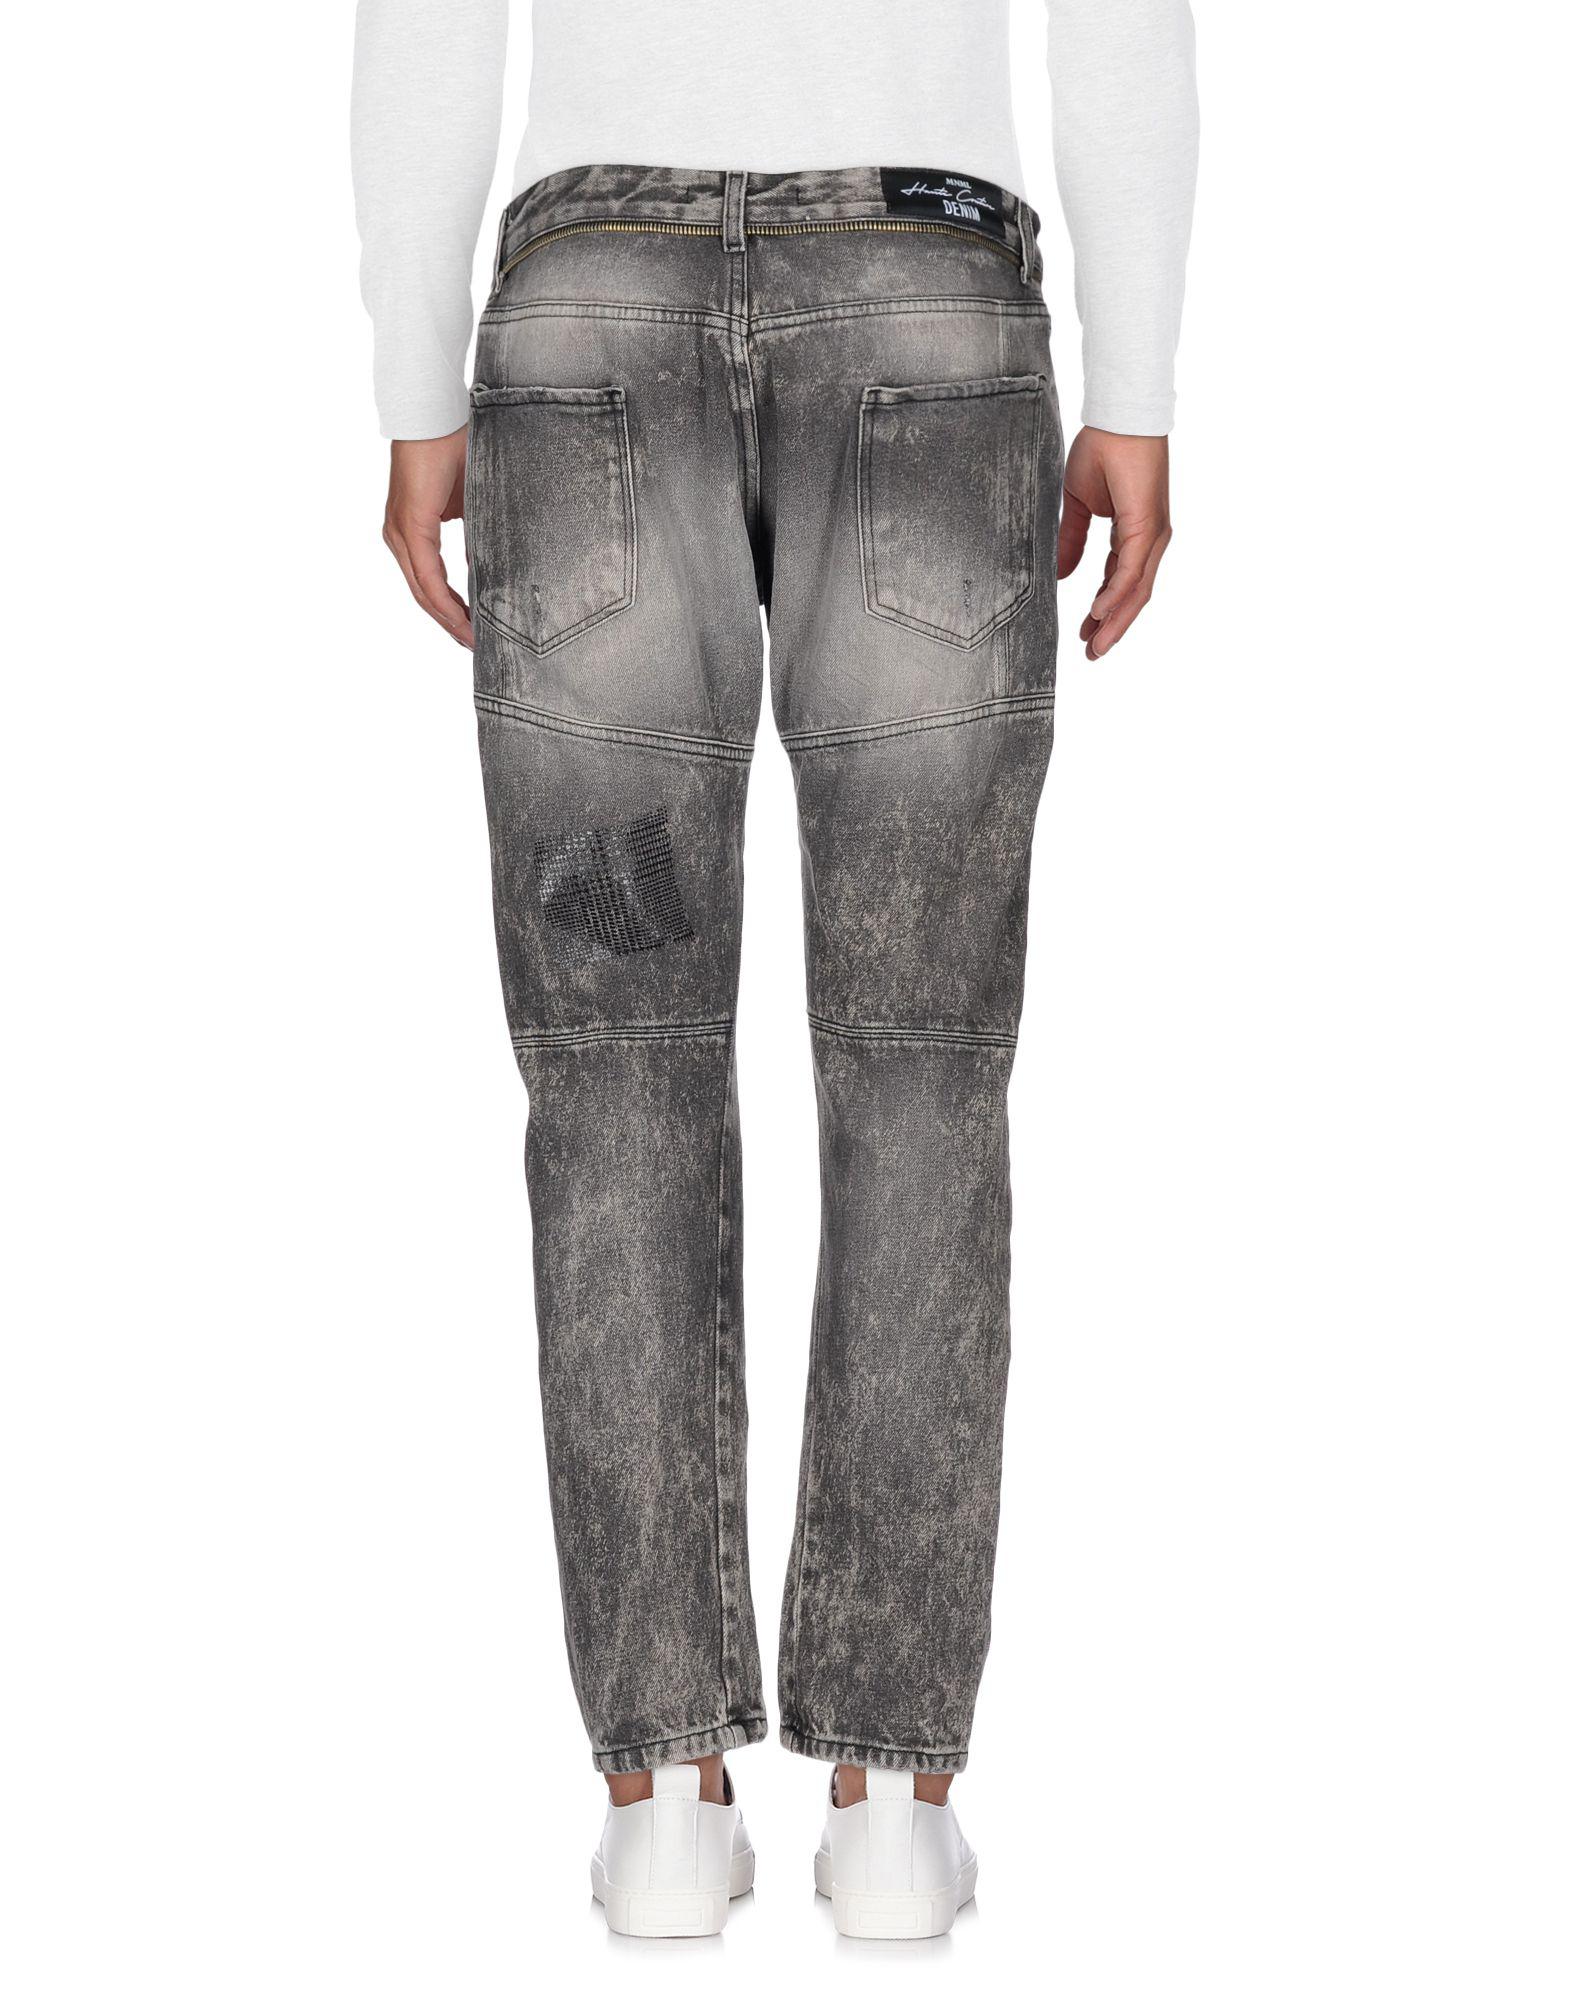 mnml grey jeans